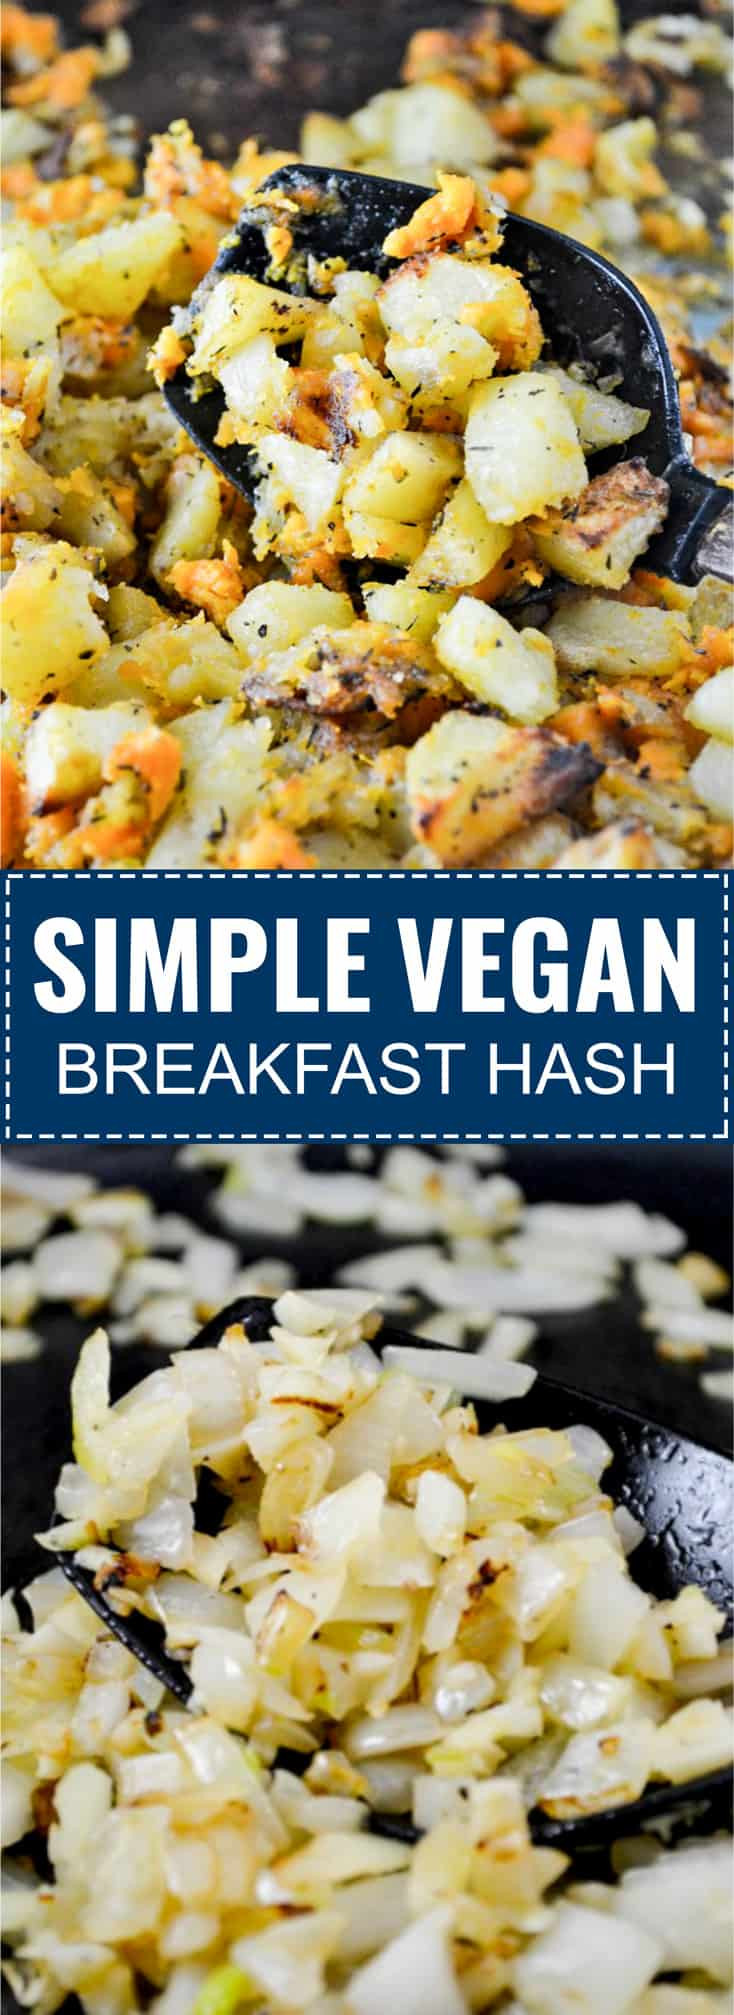 Easy Vegan Recipes Breakfast
 The Best Vegan Breakfast Hash Recipe Build Your Bite